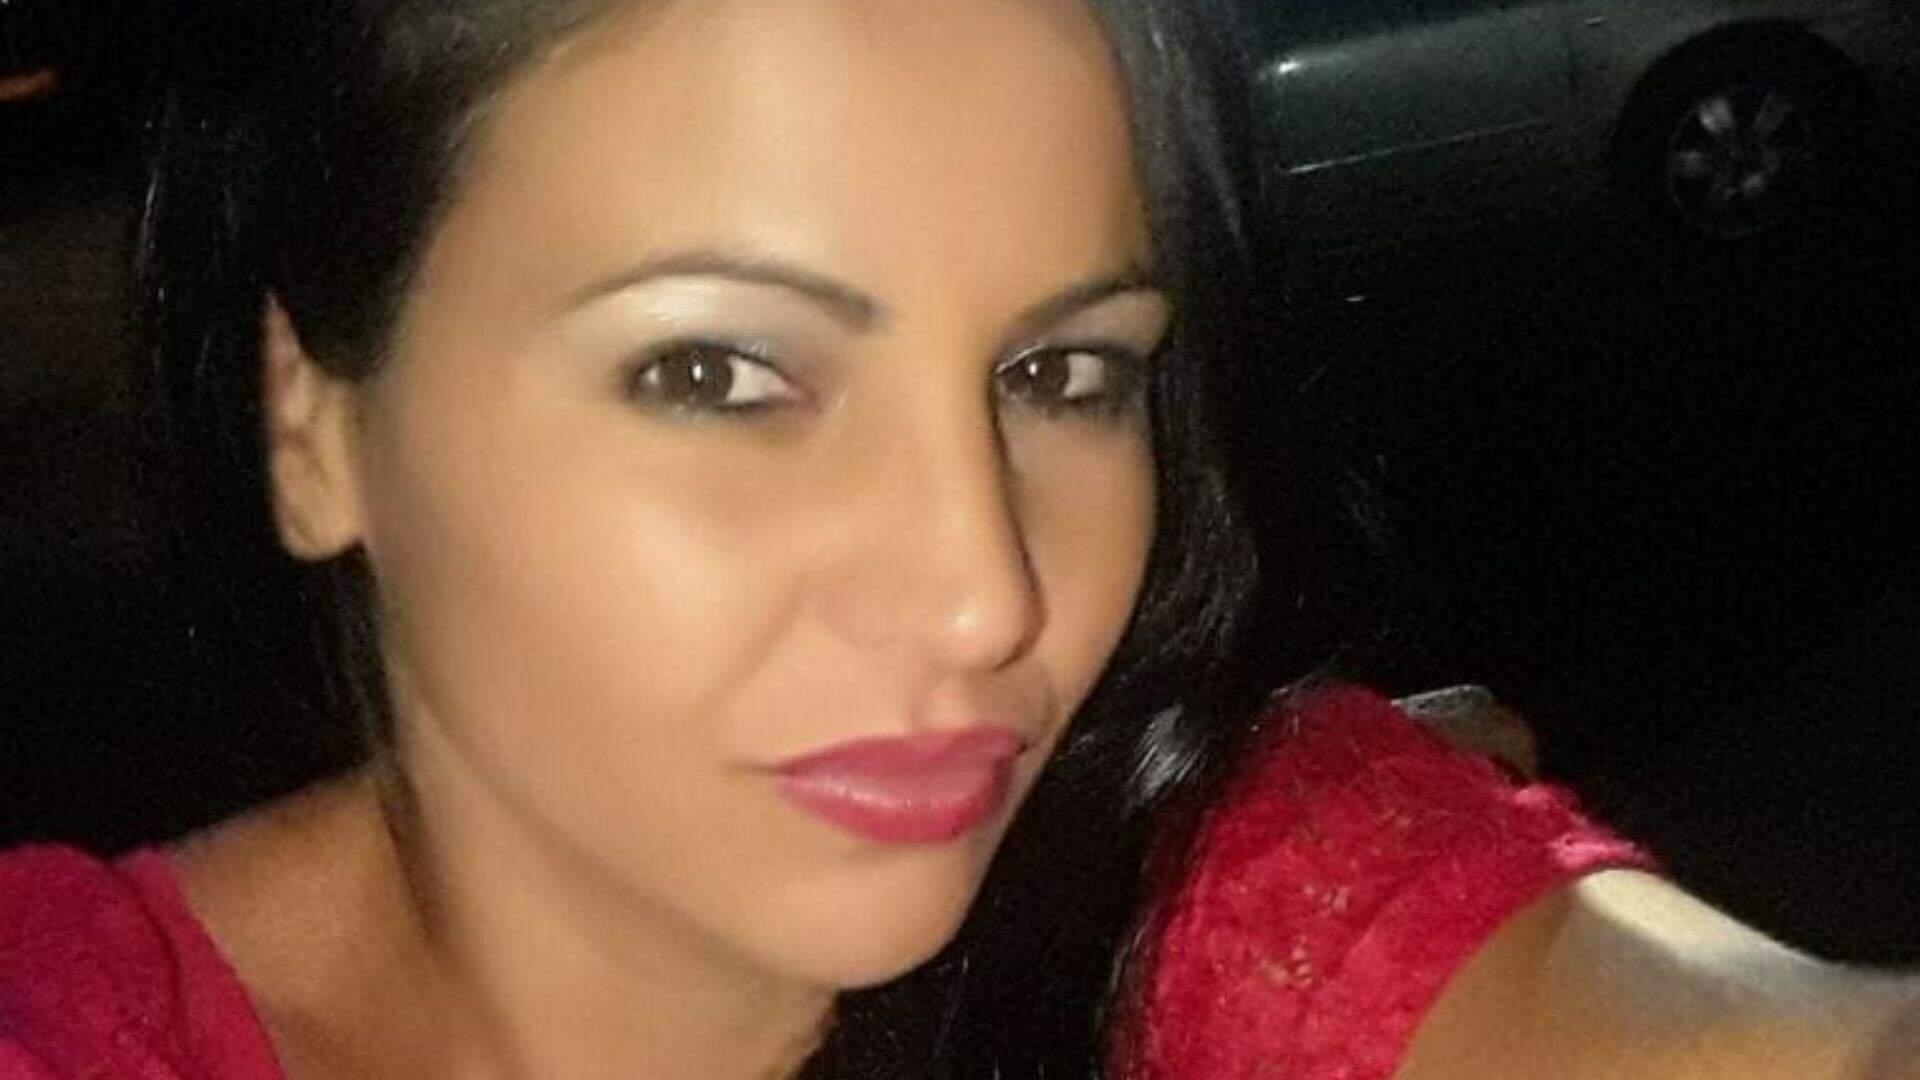 Polícia investiga se mulher encontrada em córrego de MS foi vítima de feminicídio